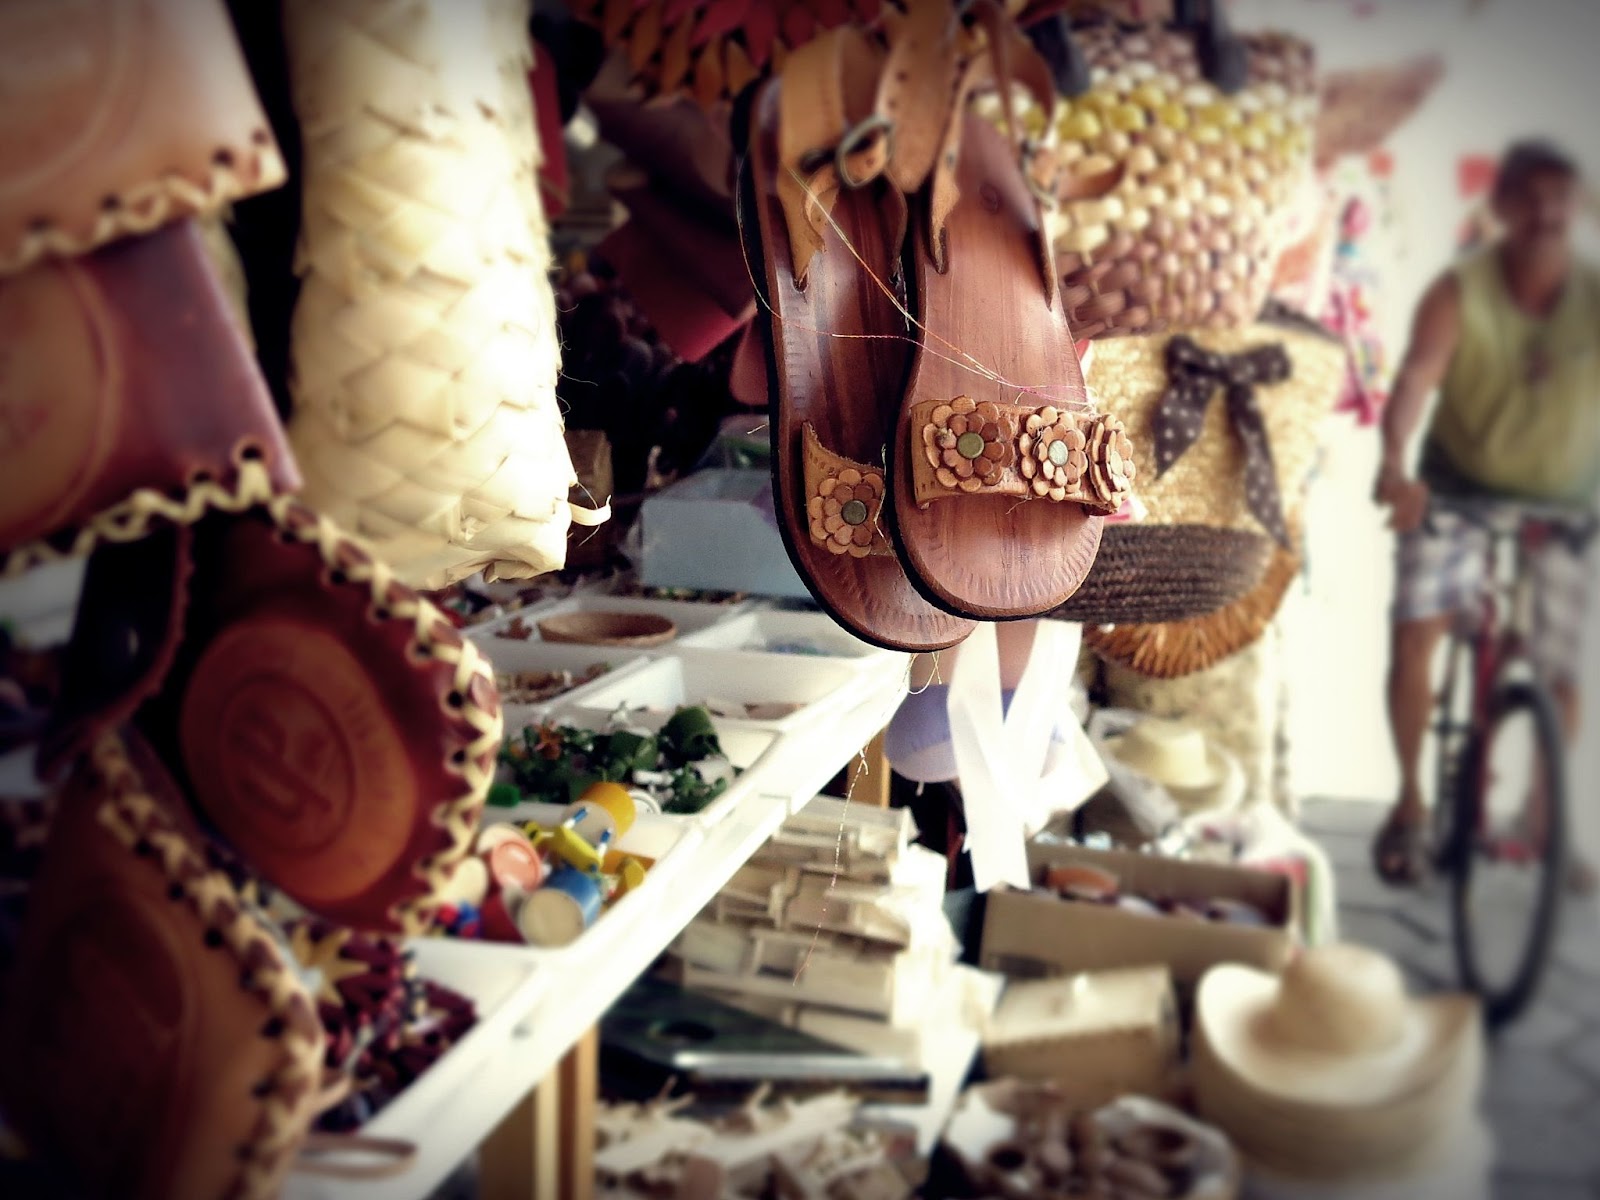 Artigos em exposição na Feira de Caruaru. São vários itens artesanais diferentes, como sandálias de couro, bolsas de palha, chapéus, peões e outros.